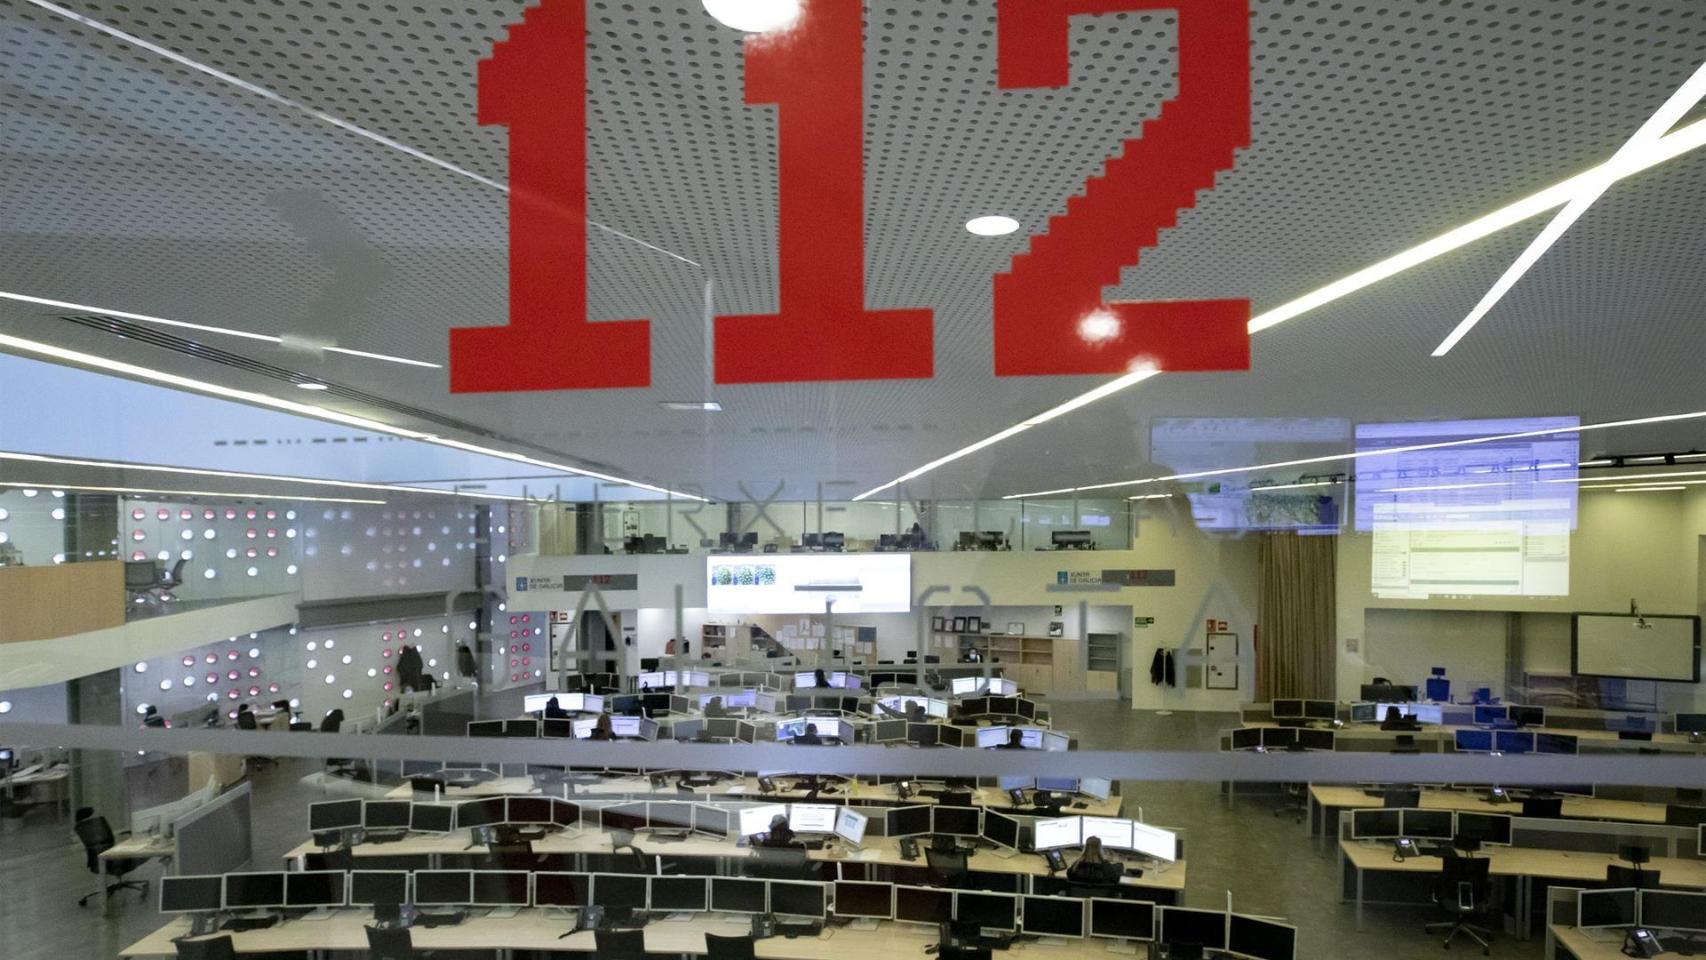 Oficinas del 112 Galicia